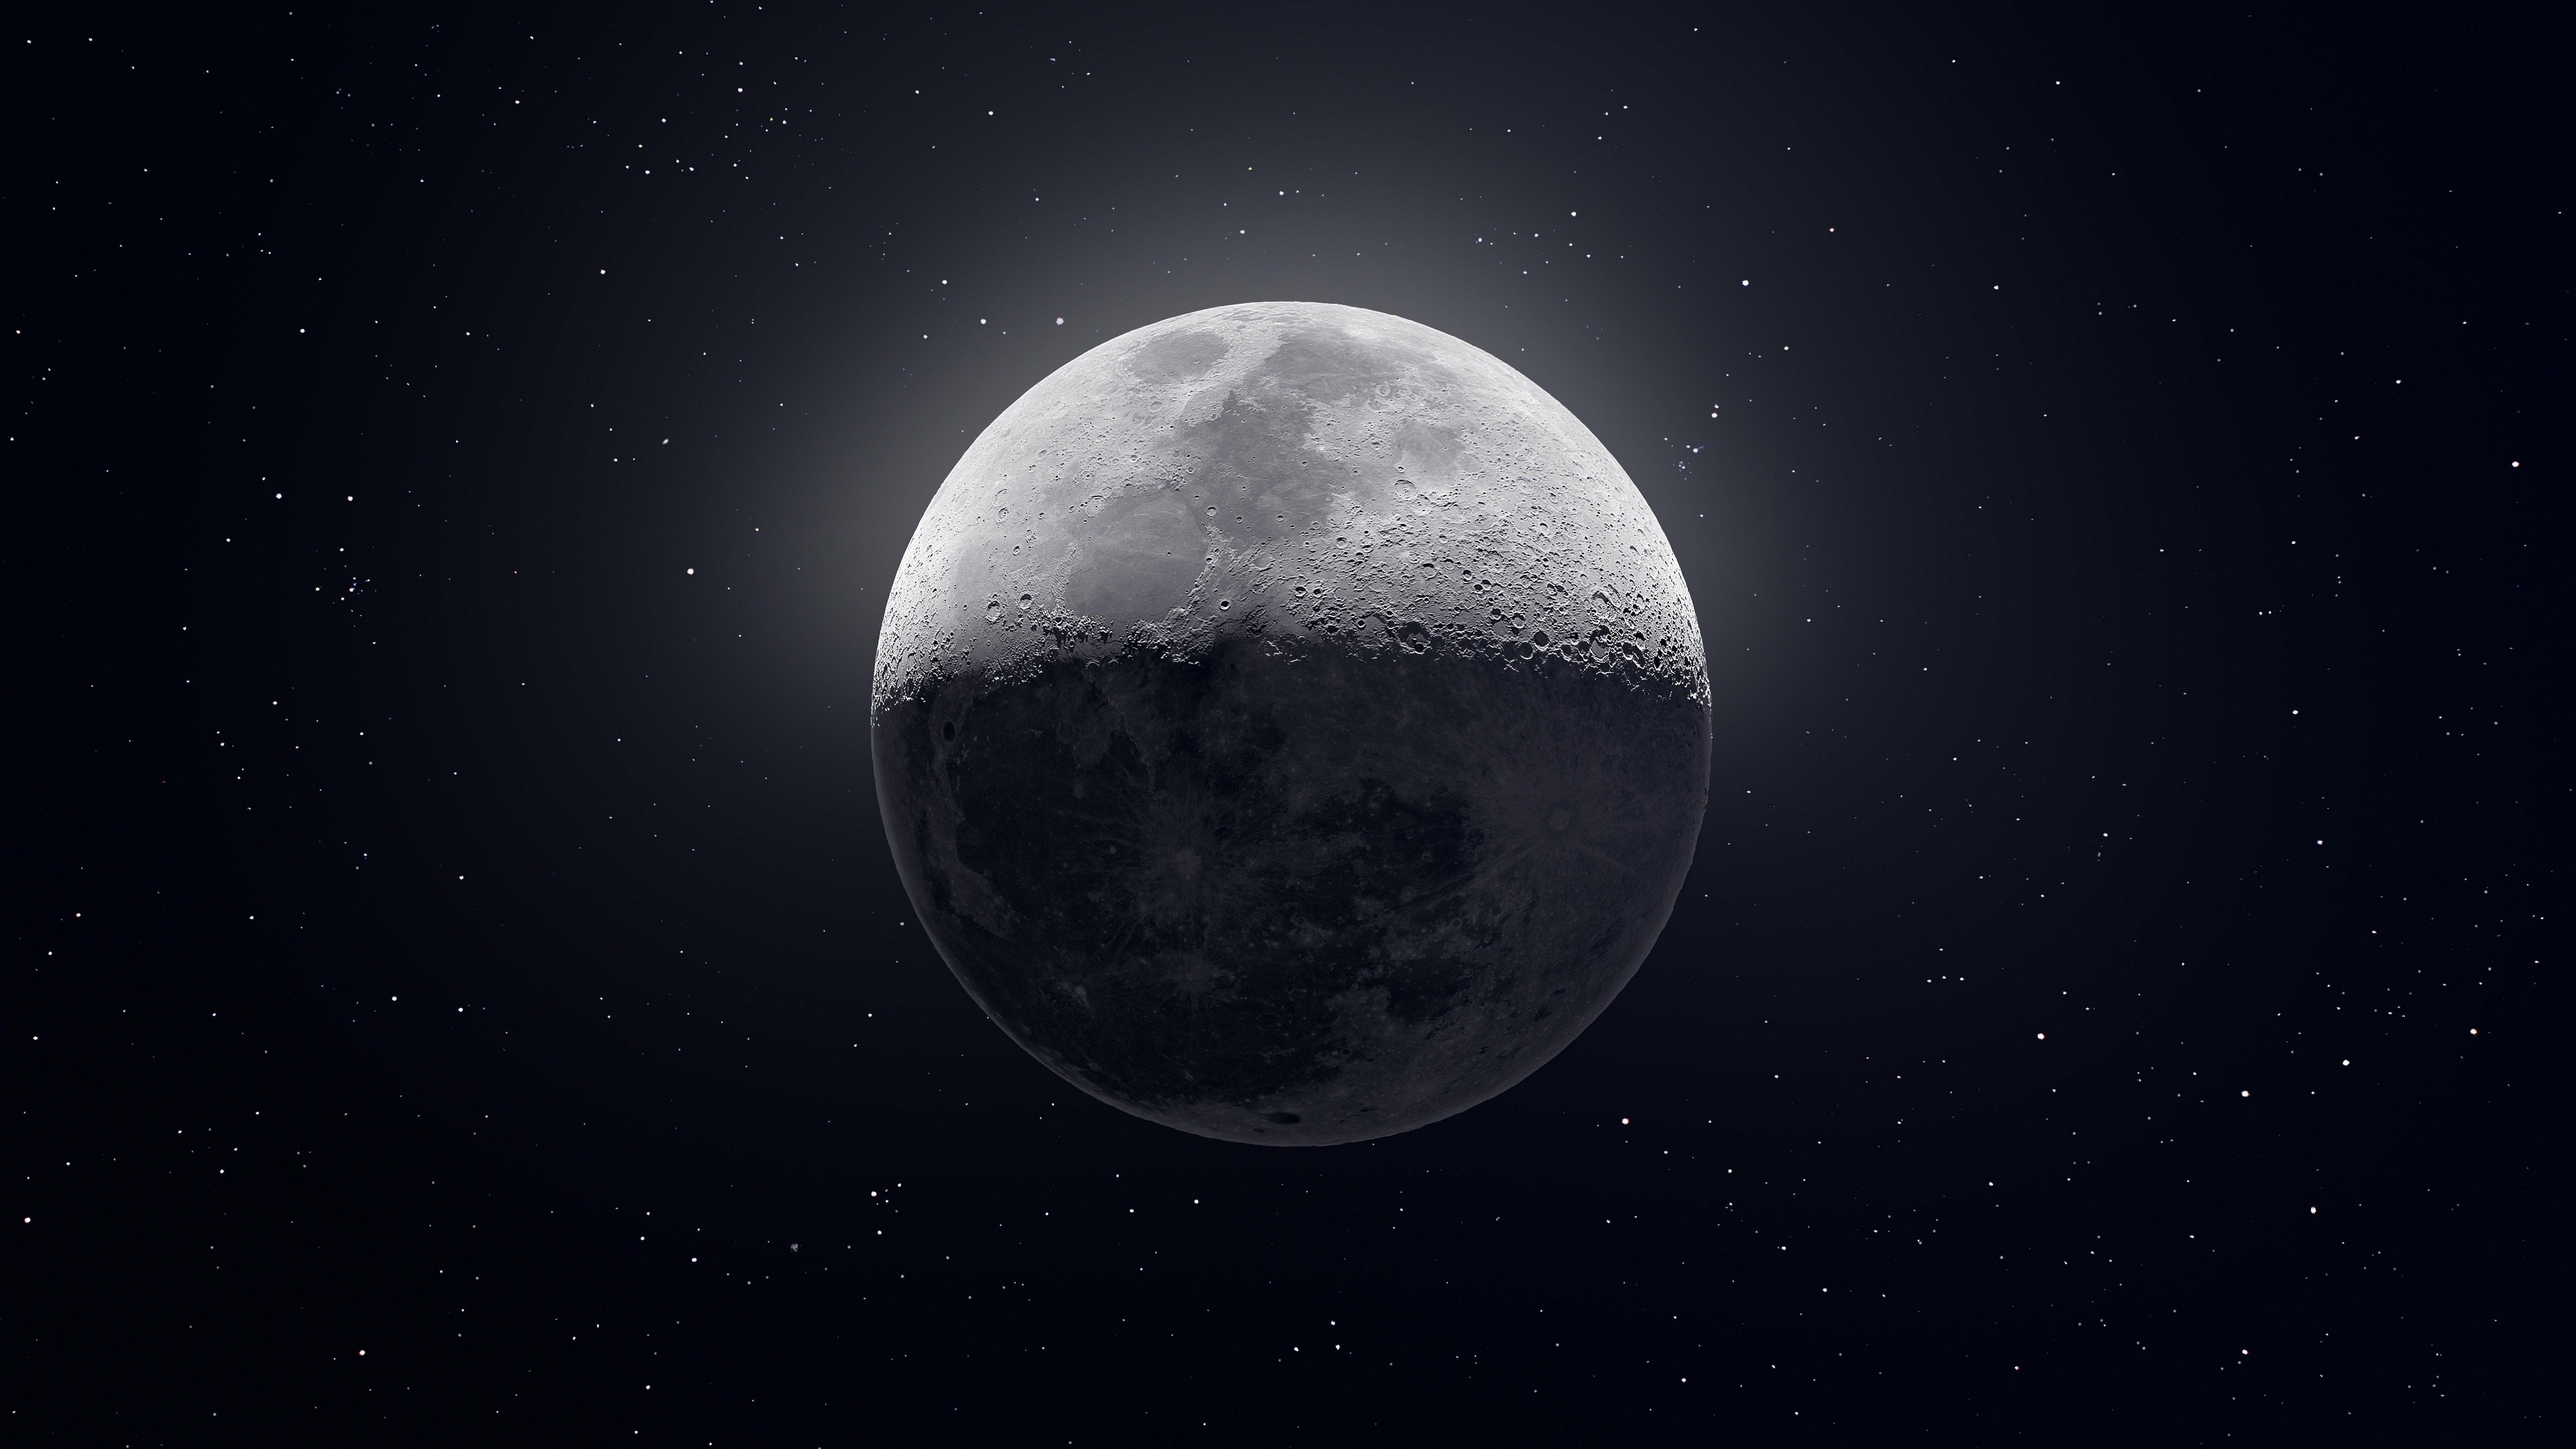 دانلود عکس ناب و جالب از کره ماه با کیفیت فوق العاده 